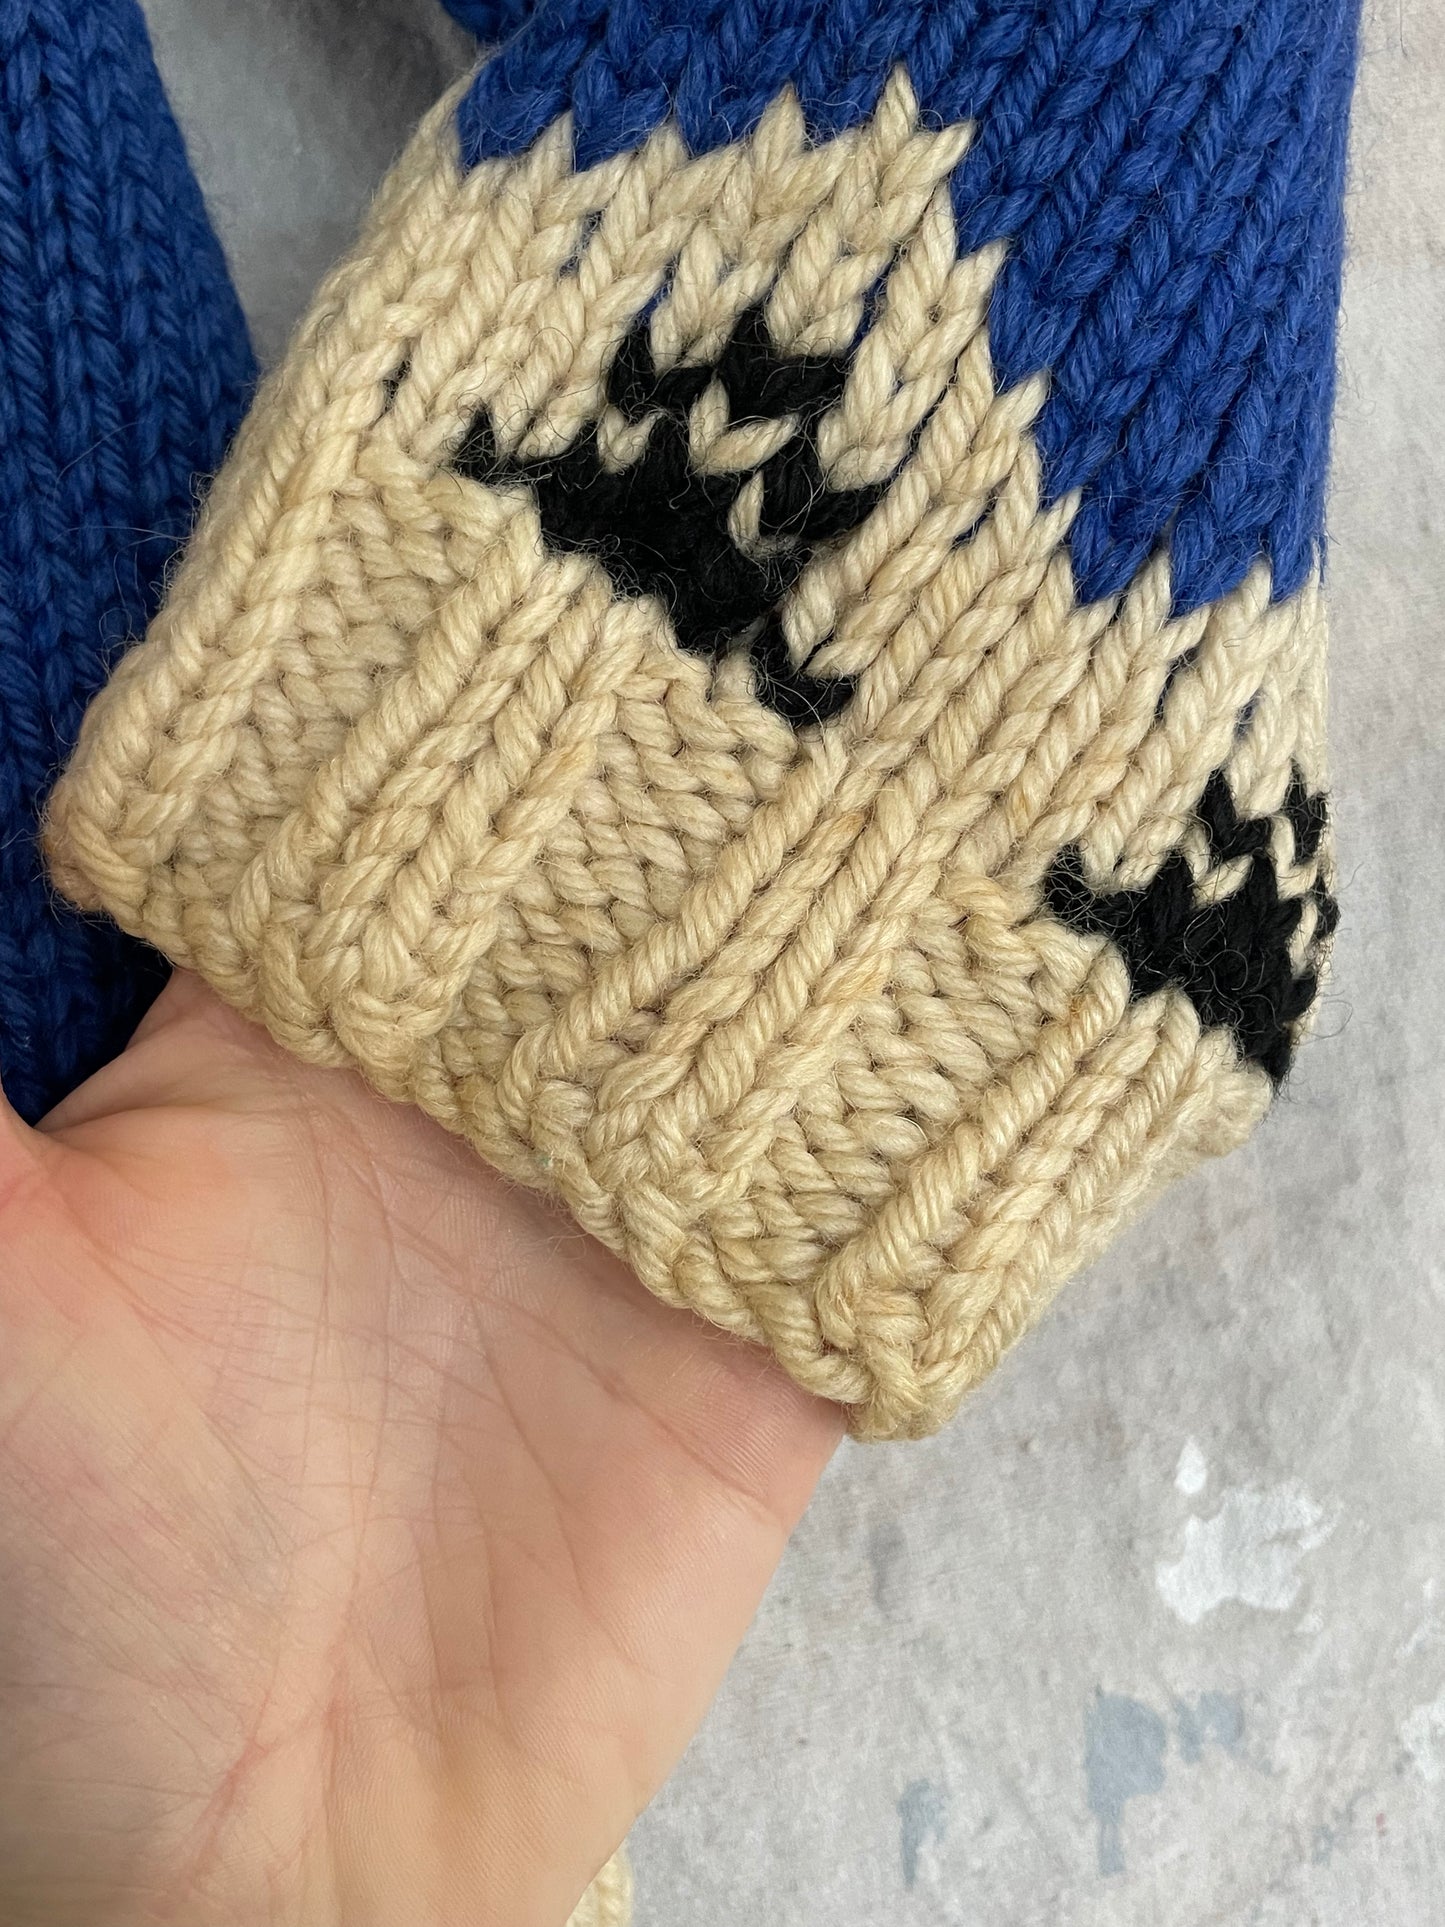 60s Handknit Cowichan Style Sweater